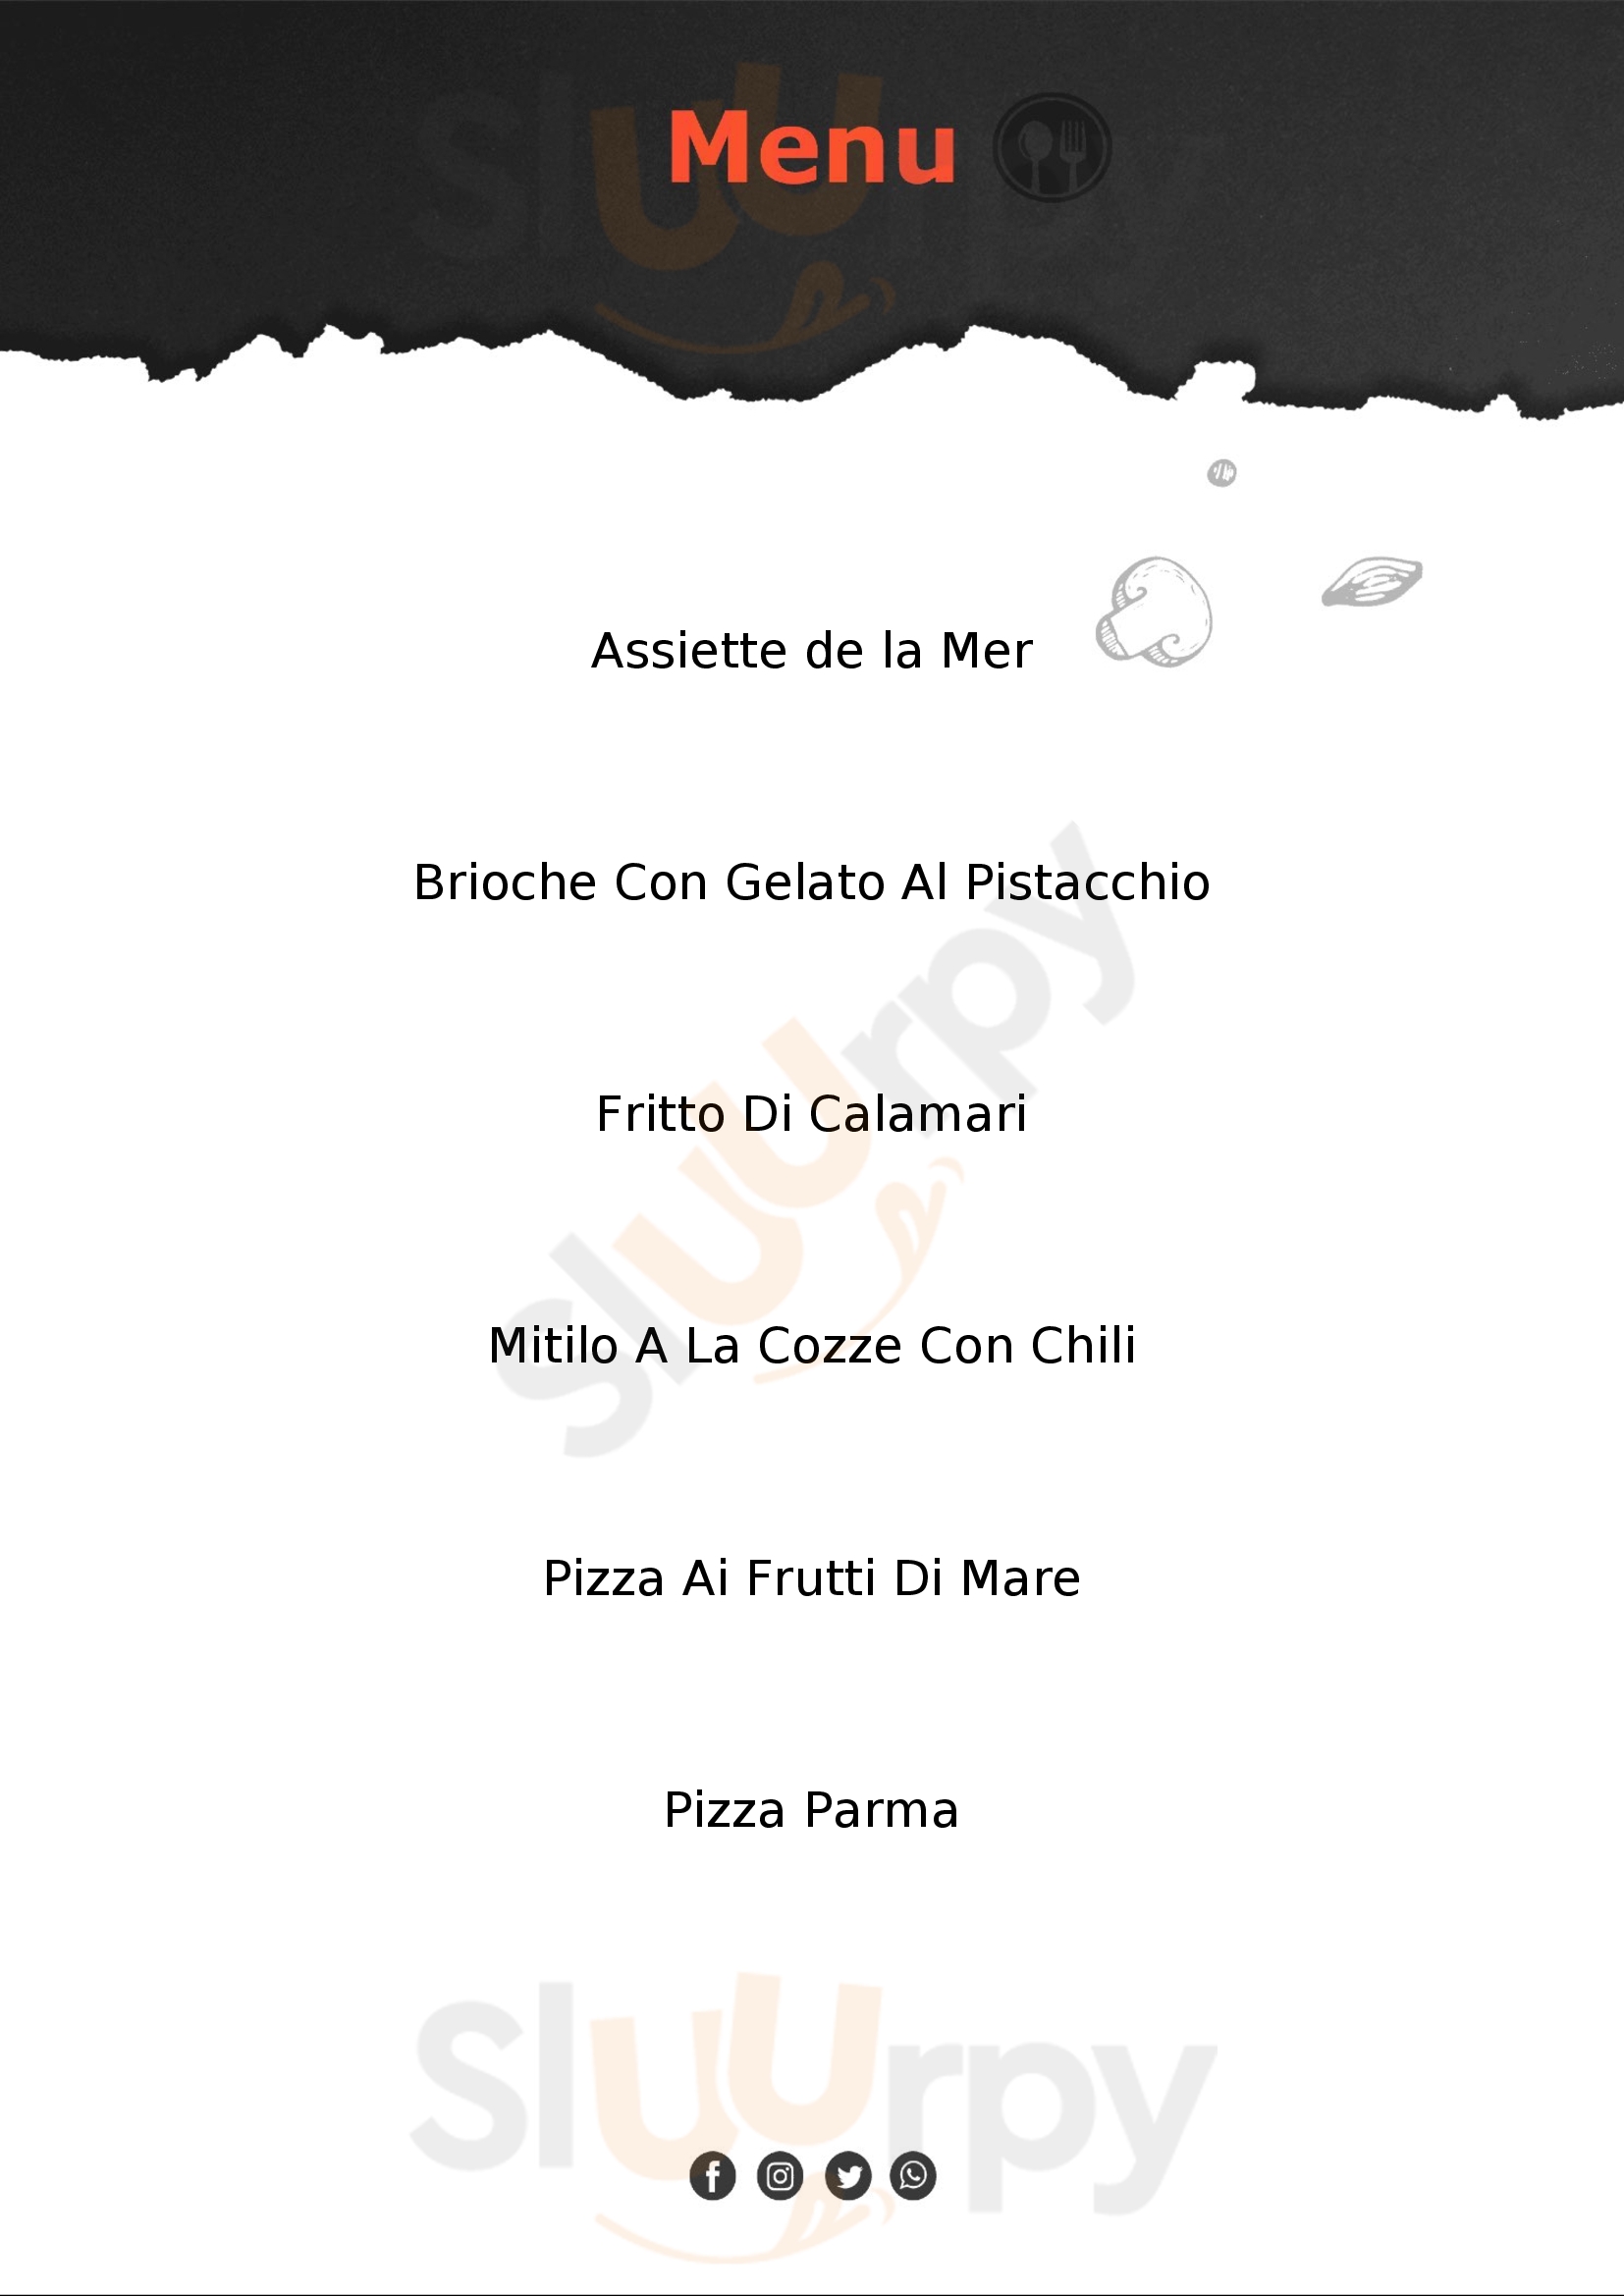 Brezza di mare pizzeria Fondachello Mascali menù 1 pagina